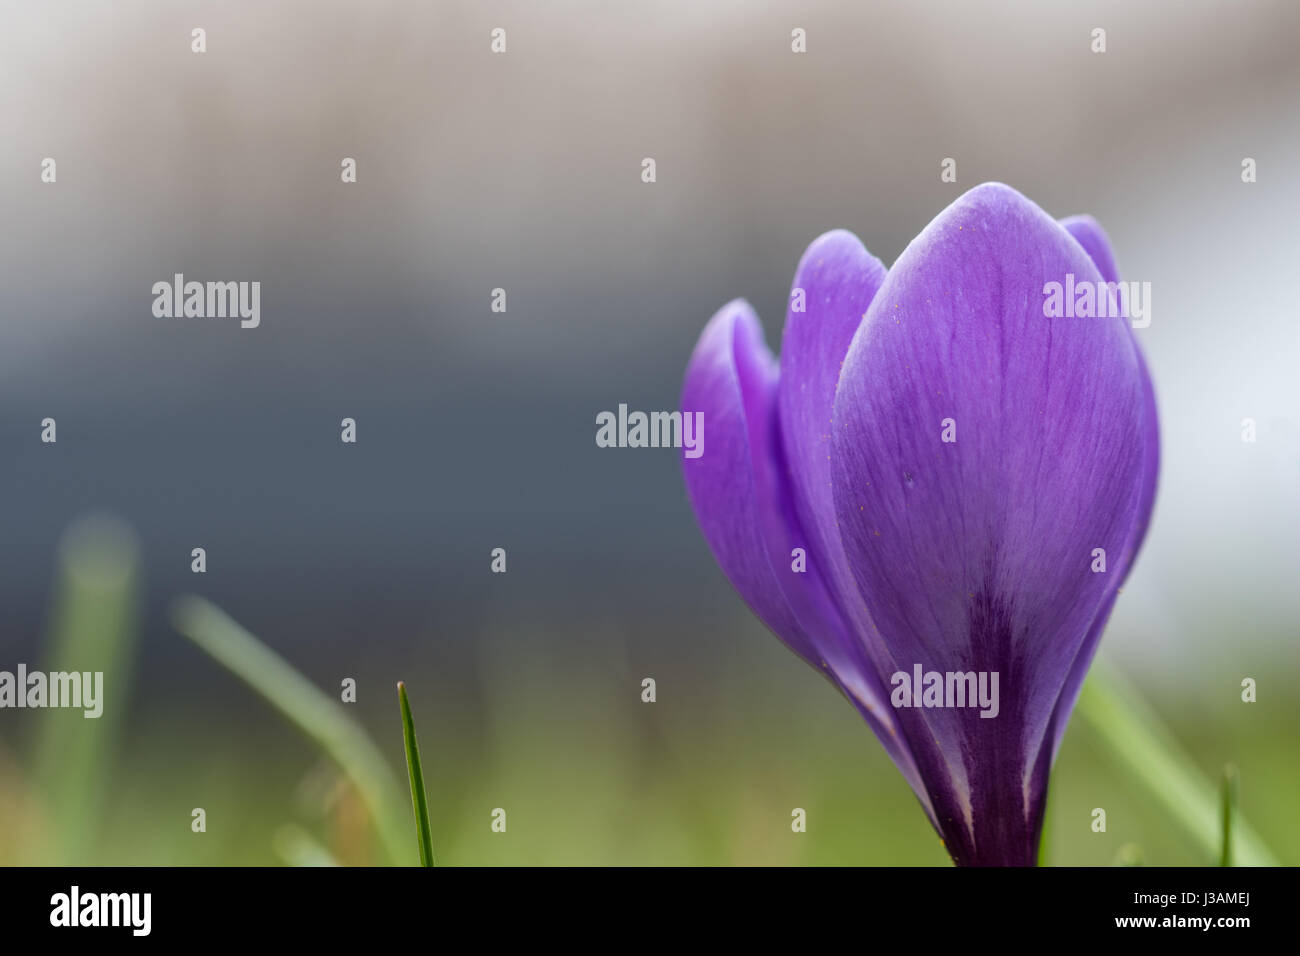 Lilac crocus flower closeup with copyspece Stock Photo